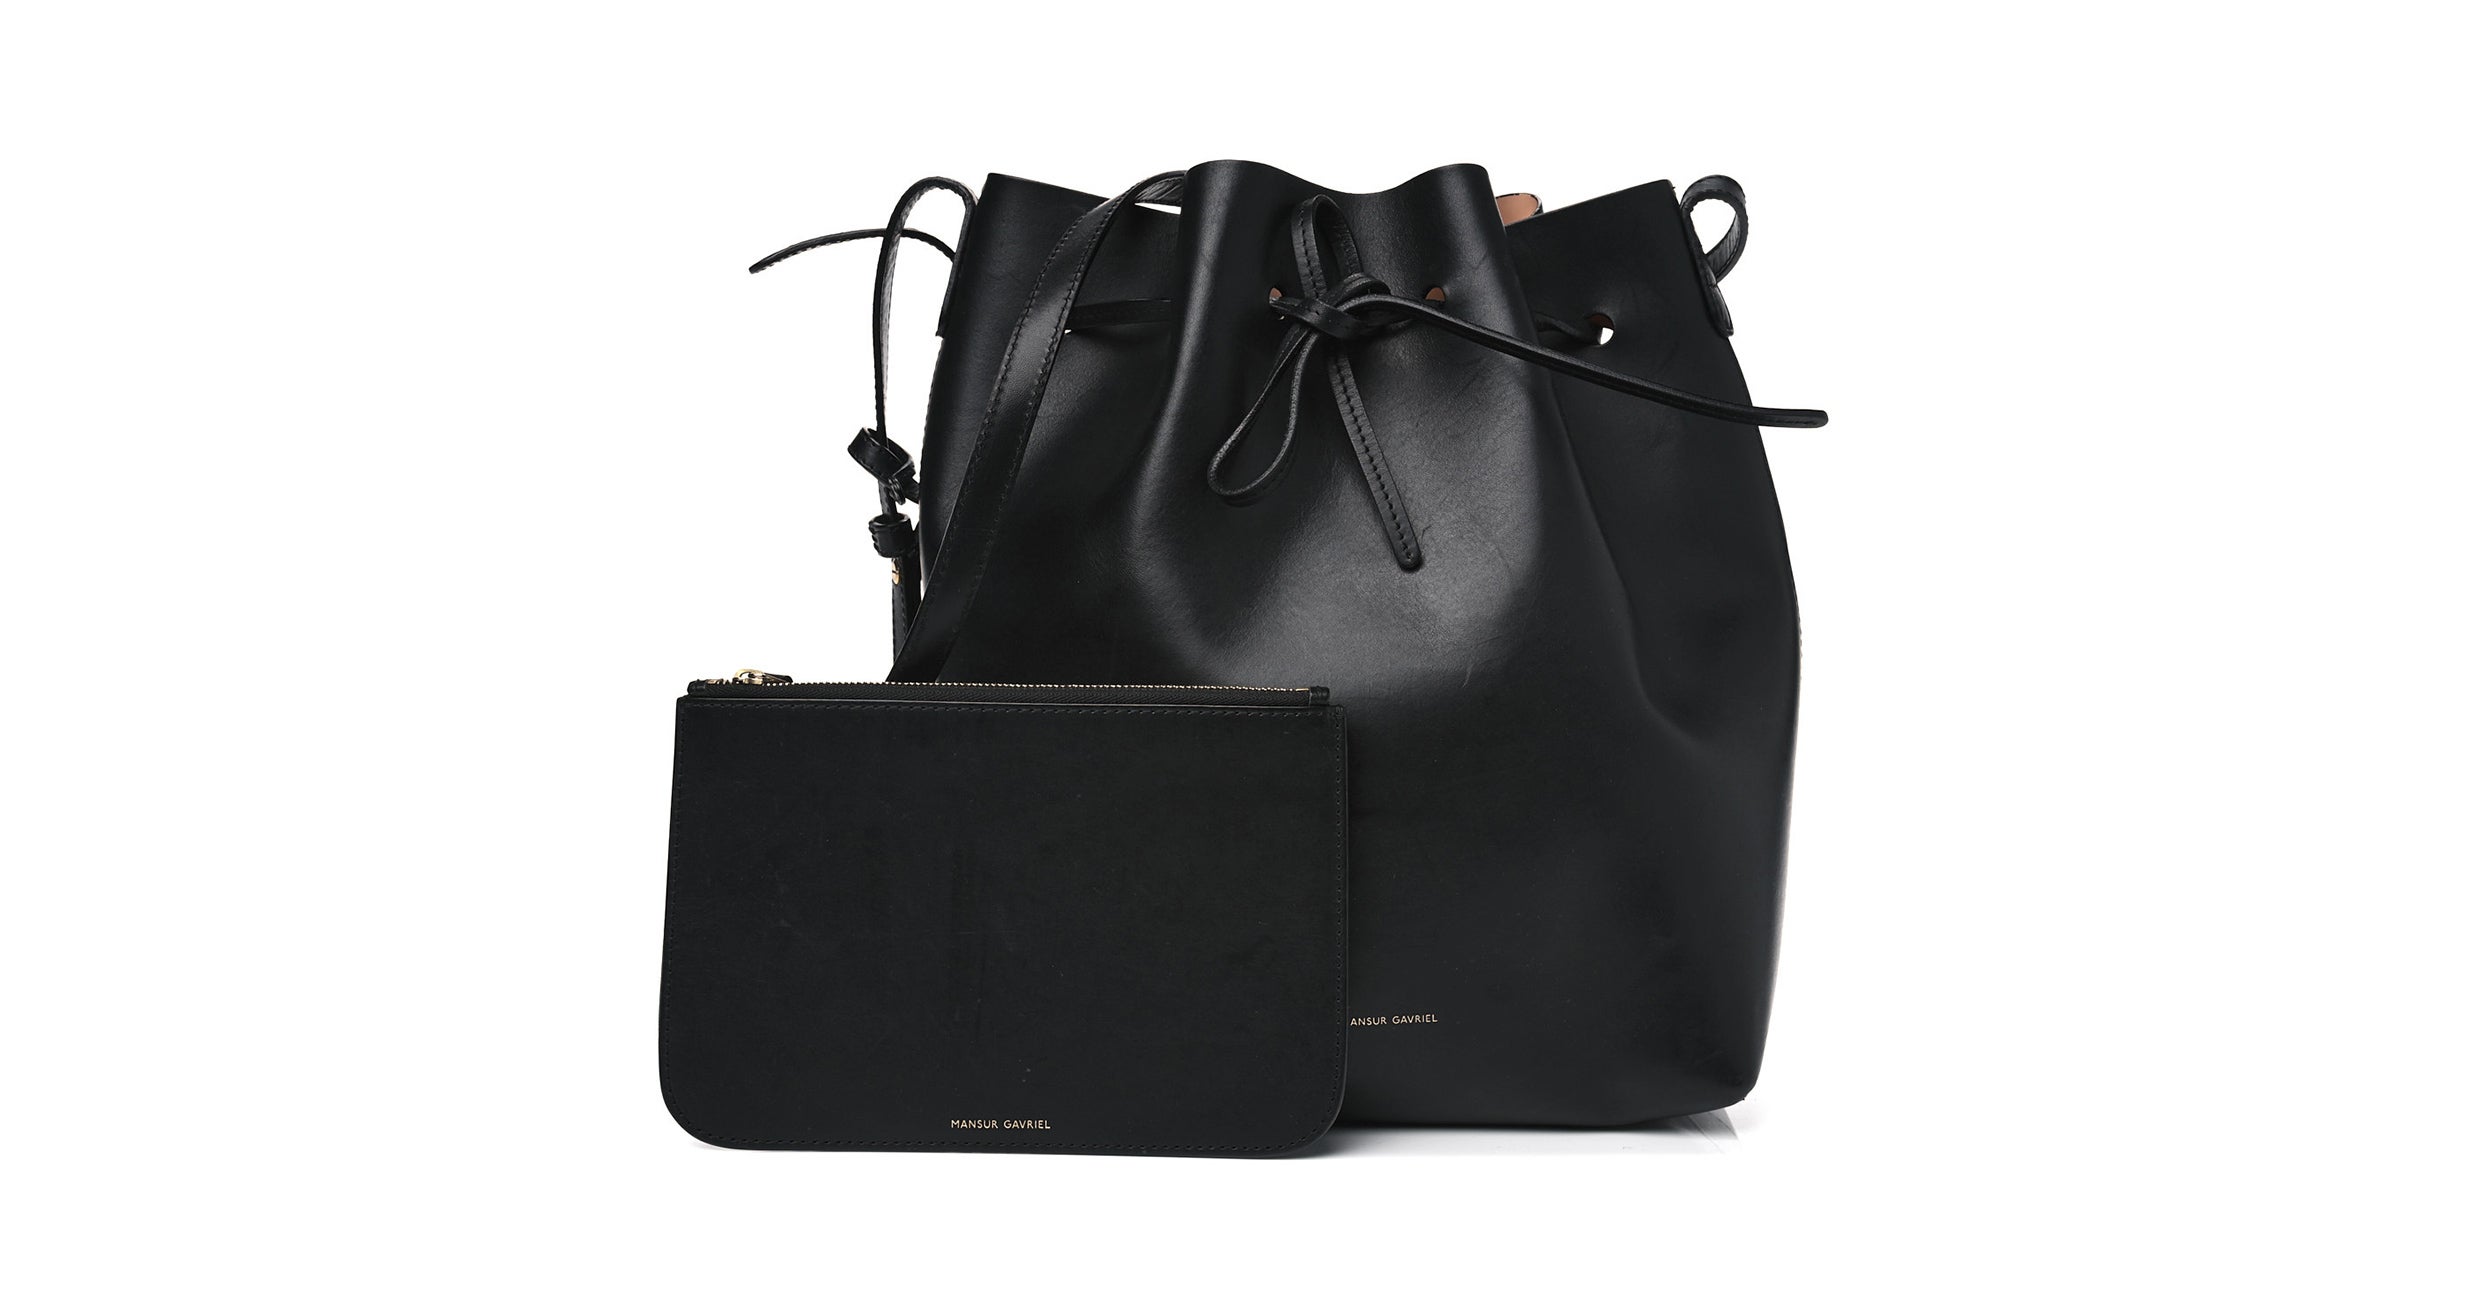 10 Ways to Style the Givenchy Antigona Small Bag - Karina Style